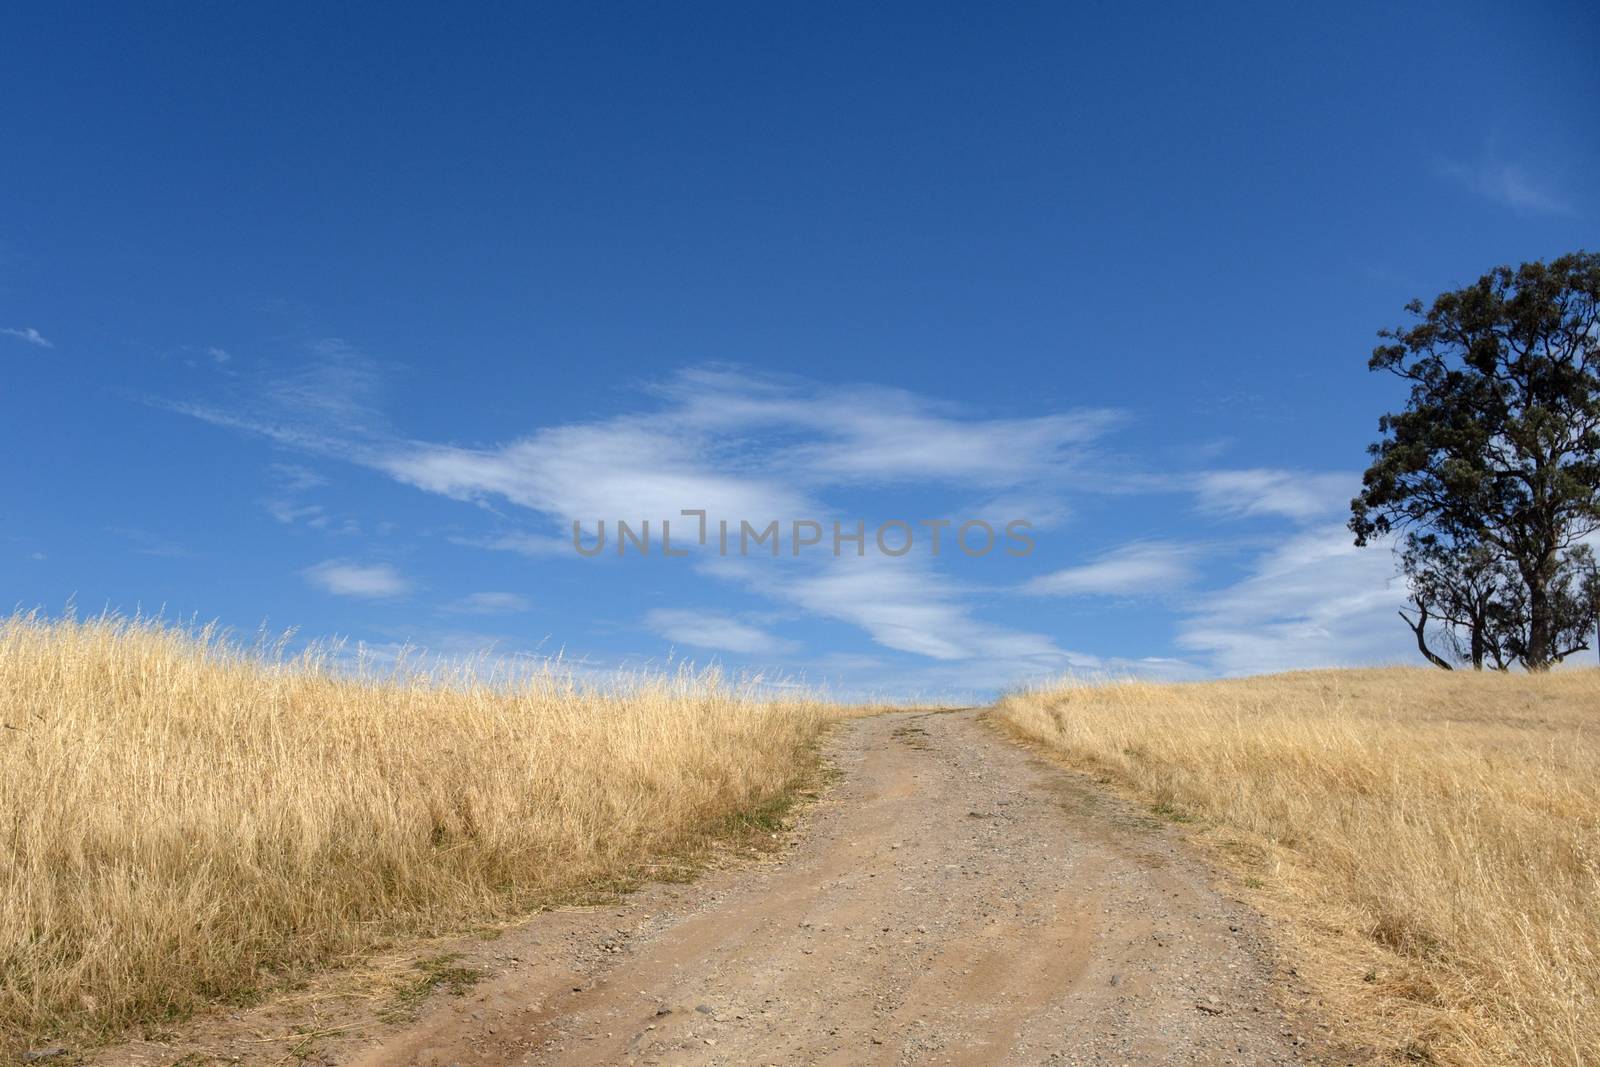 Scenic view road to the hill on the way of Tallangatta in Victoria, Australia